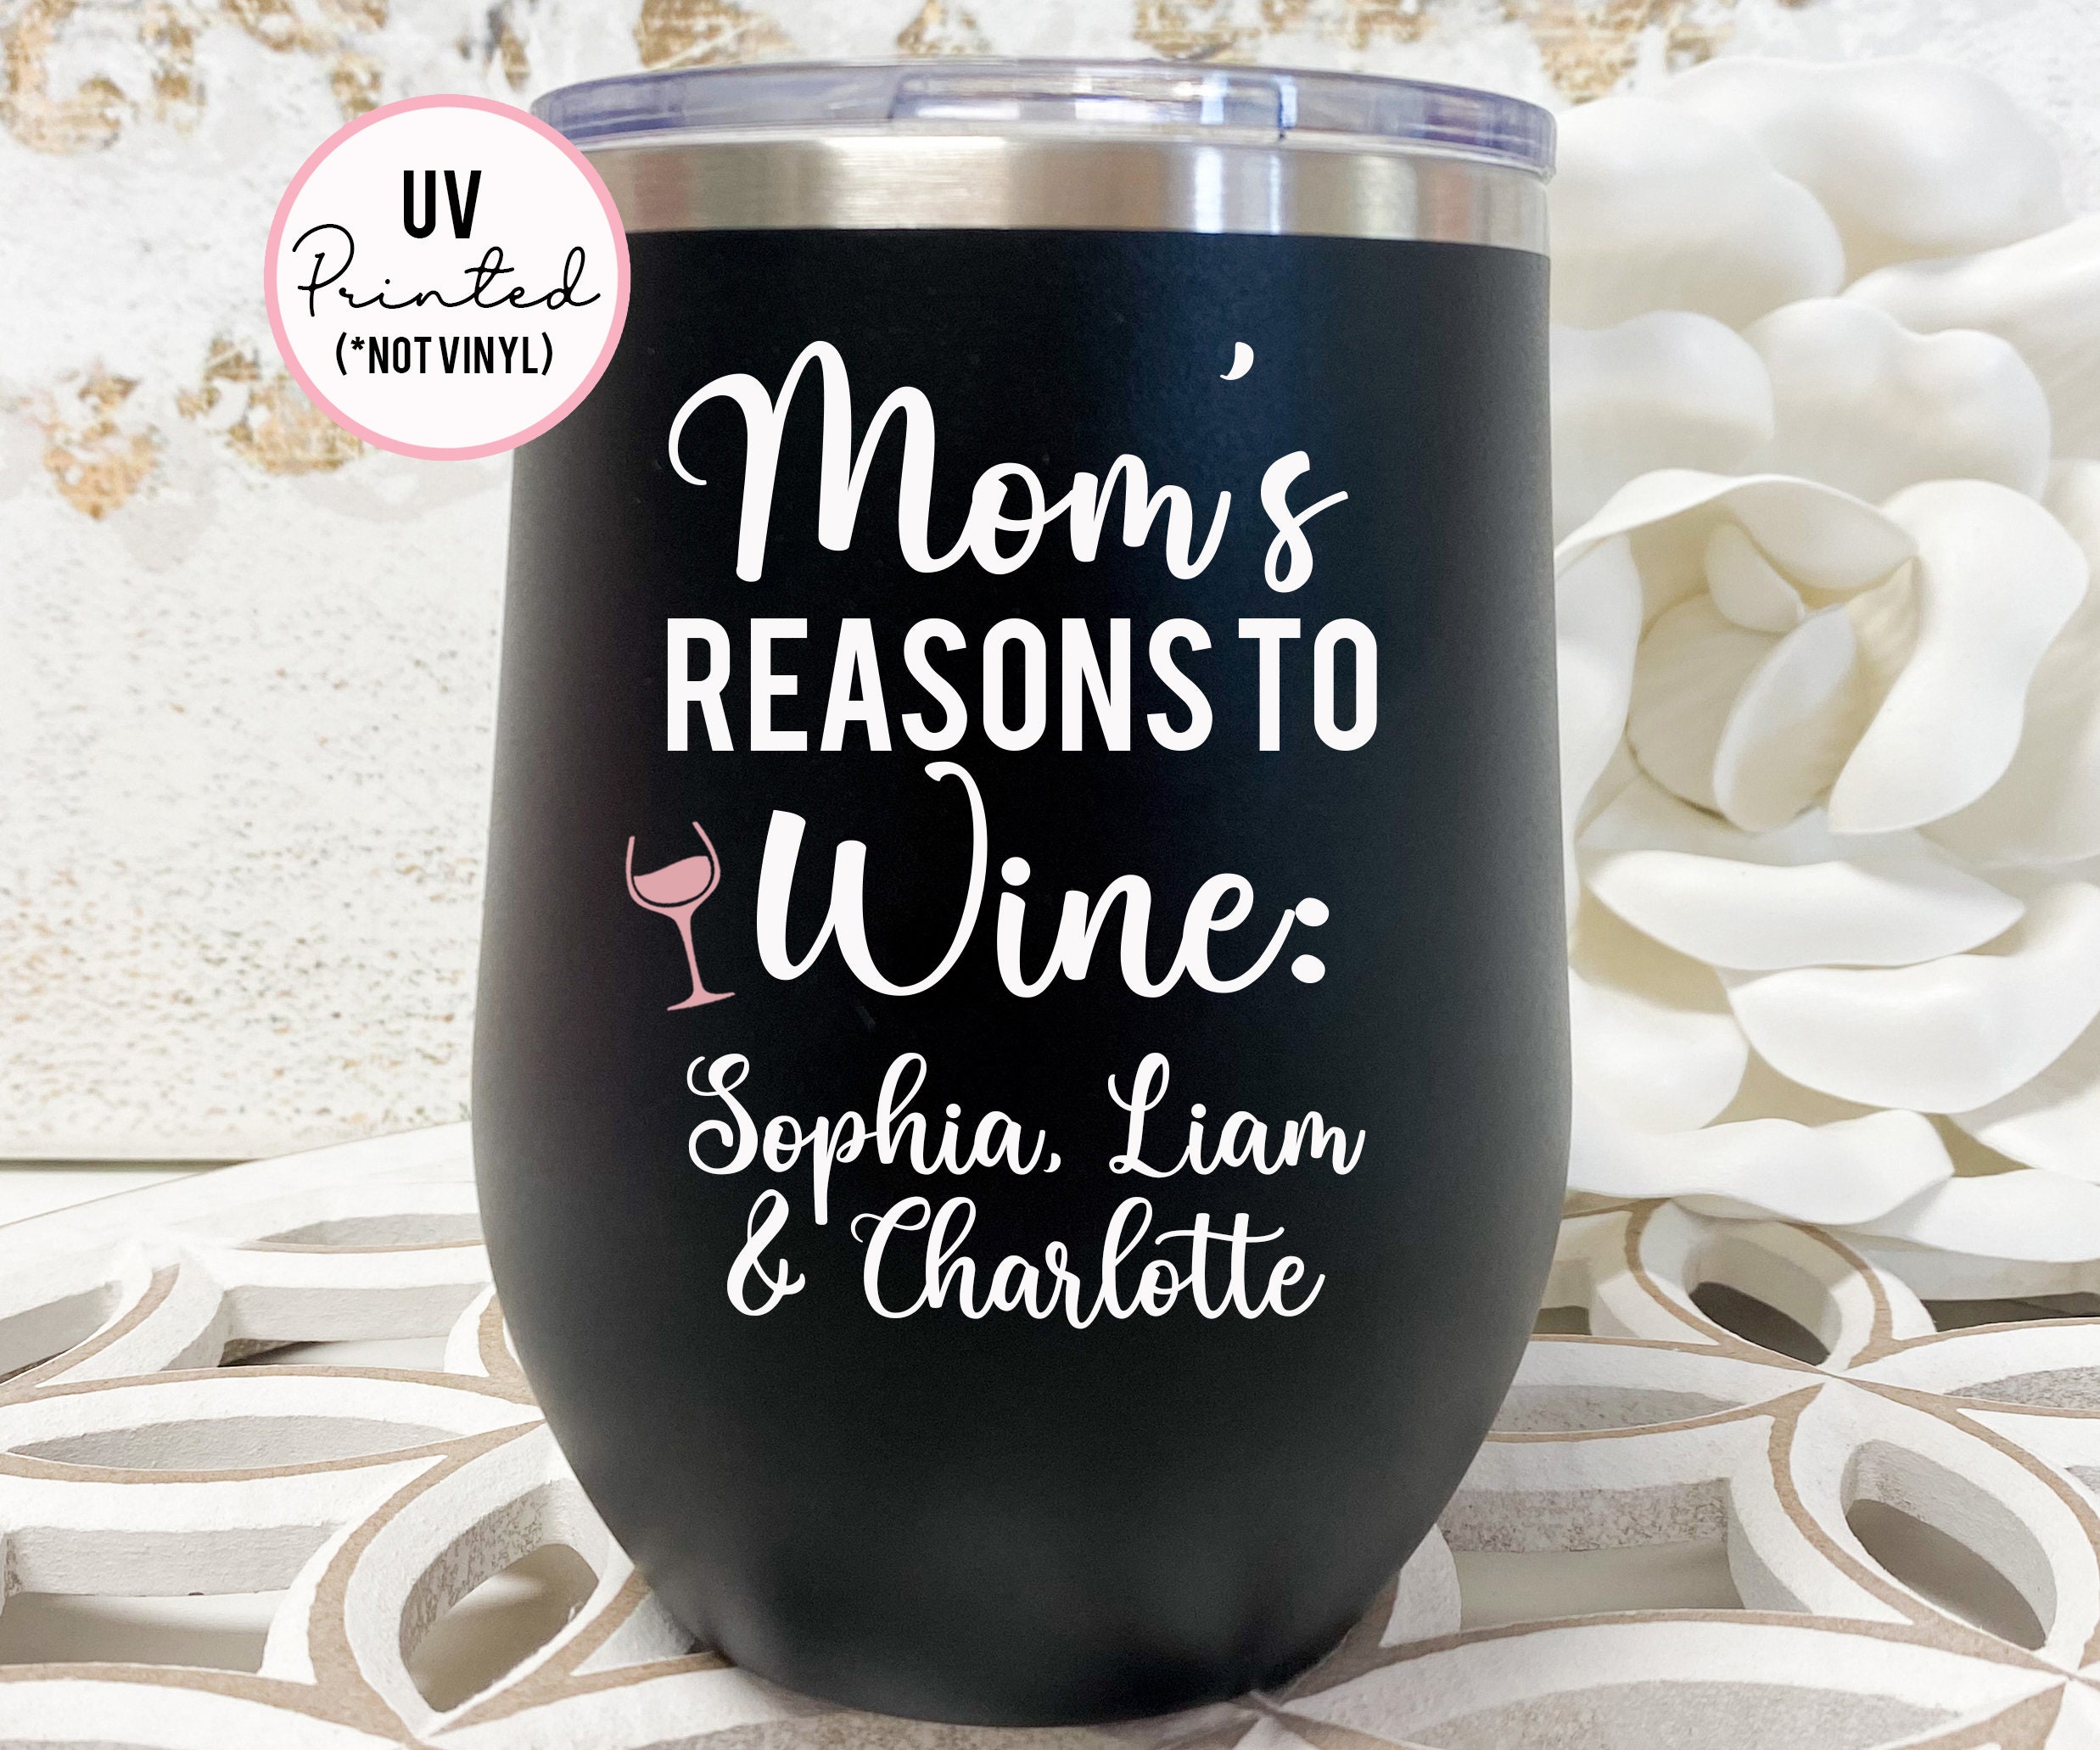 Best Mom Ever - Wine Tumbler — White Confetti Box